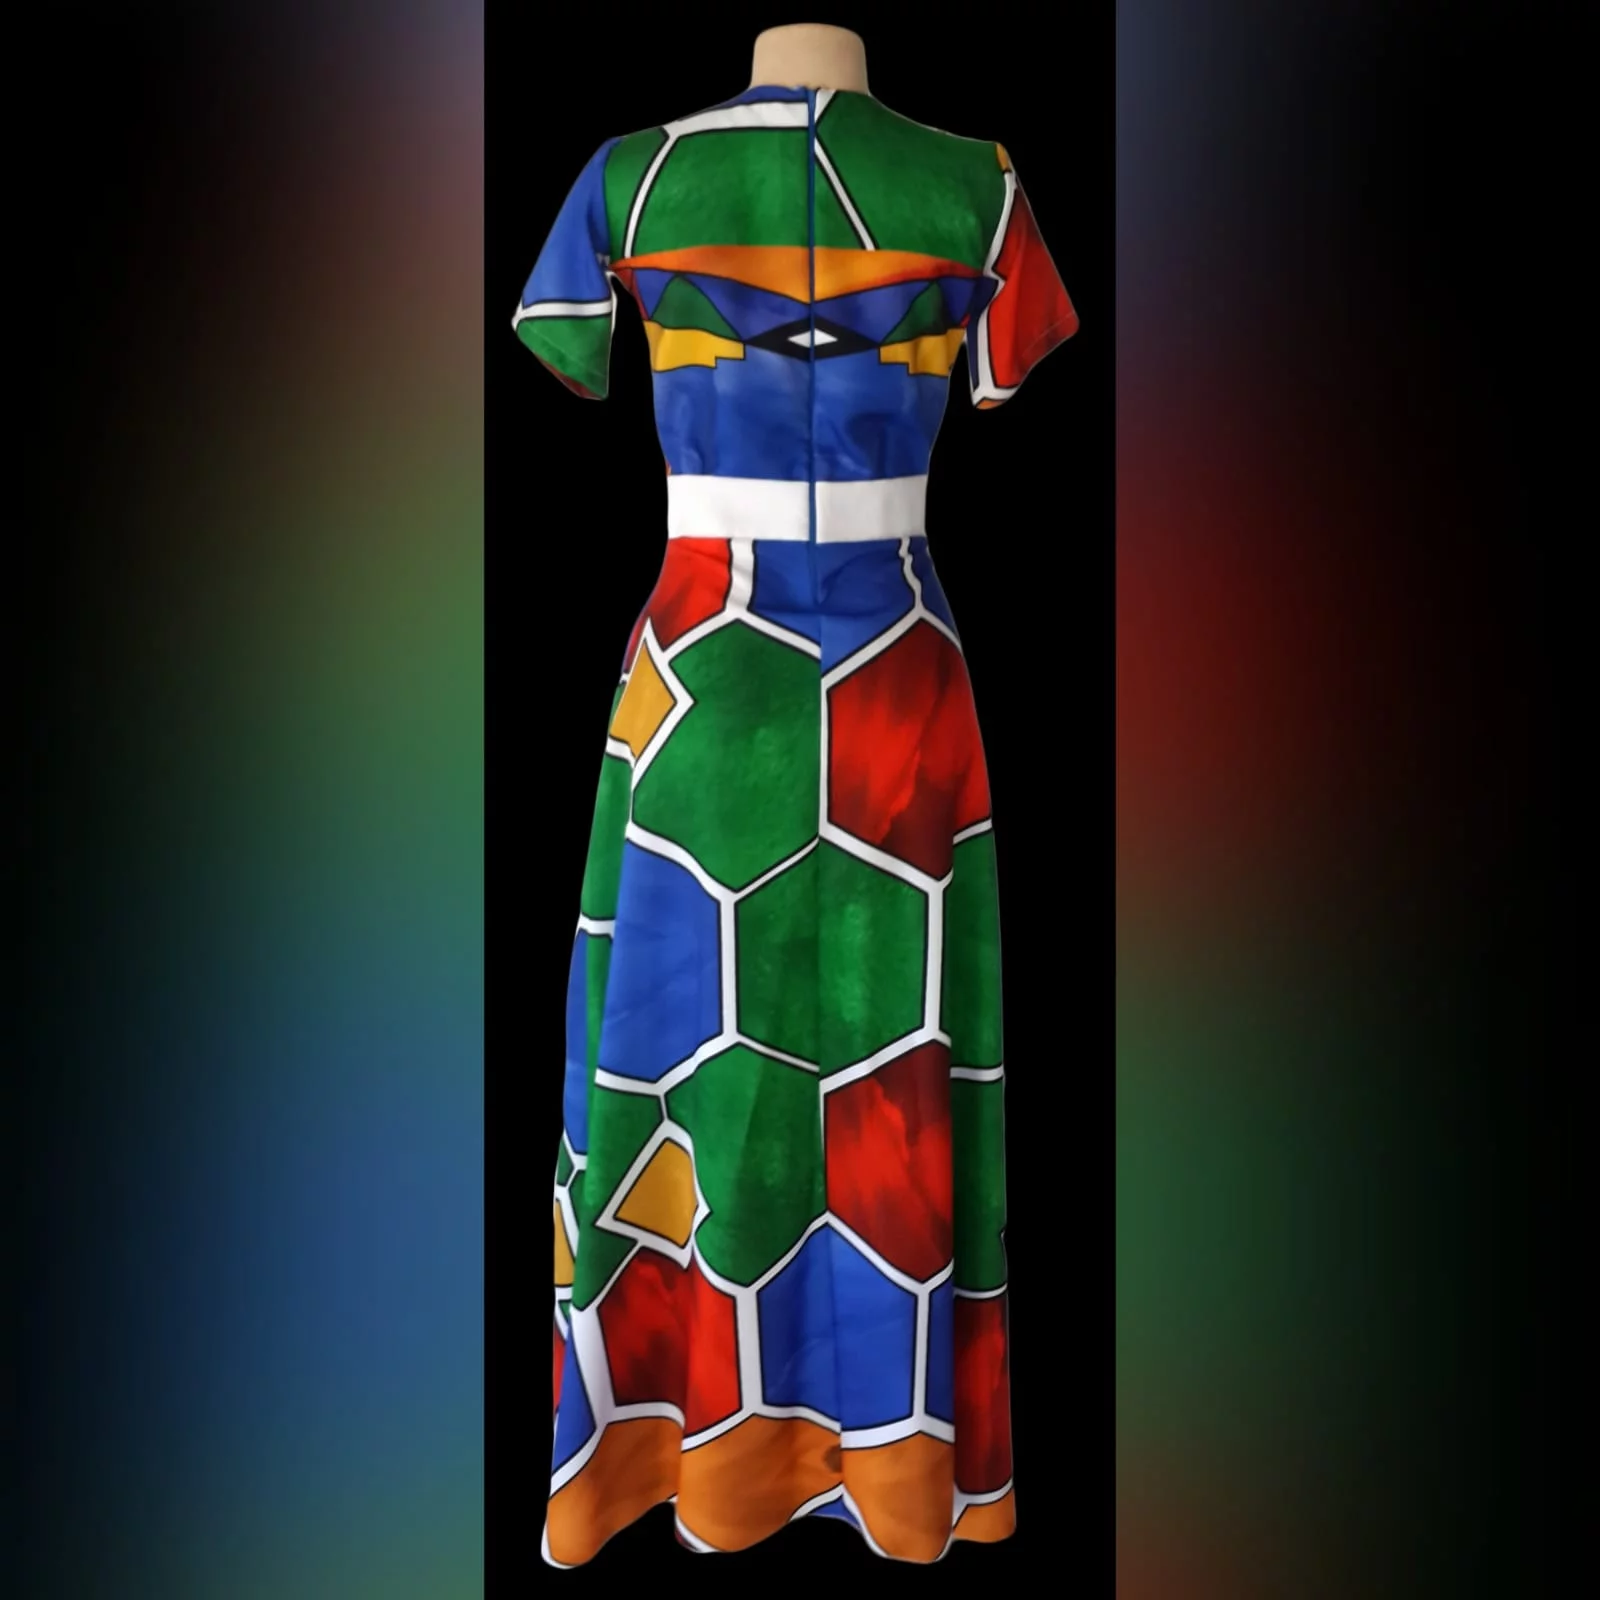 Vestido de tecido africano ndebele longo 5 vestido de tecido africano ndebele longo, com cinto branco e com camisa combinando